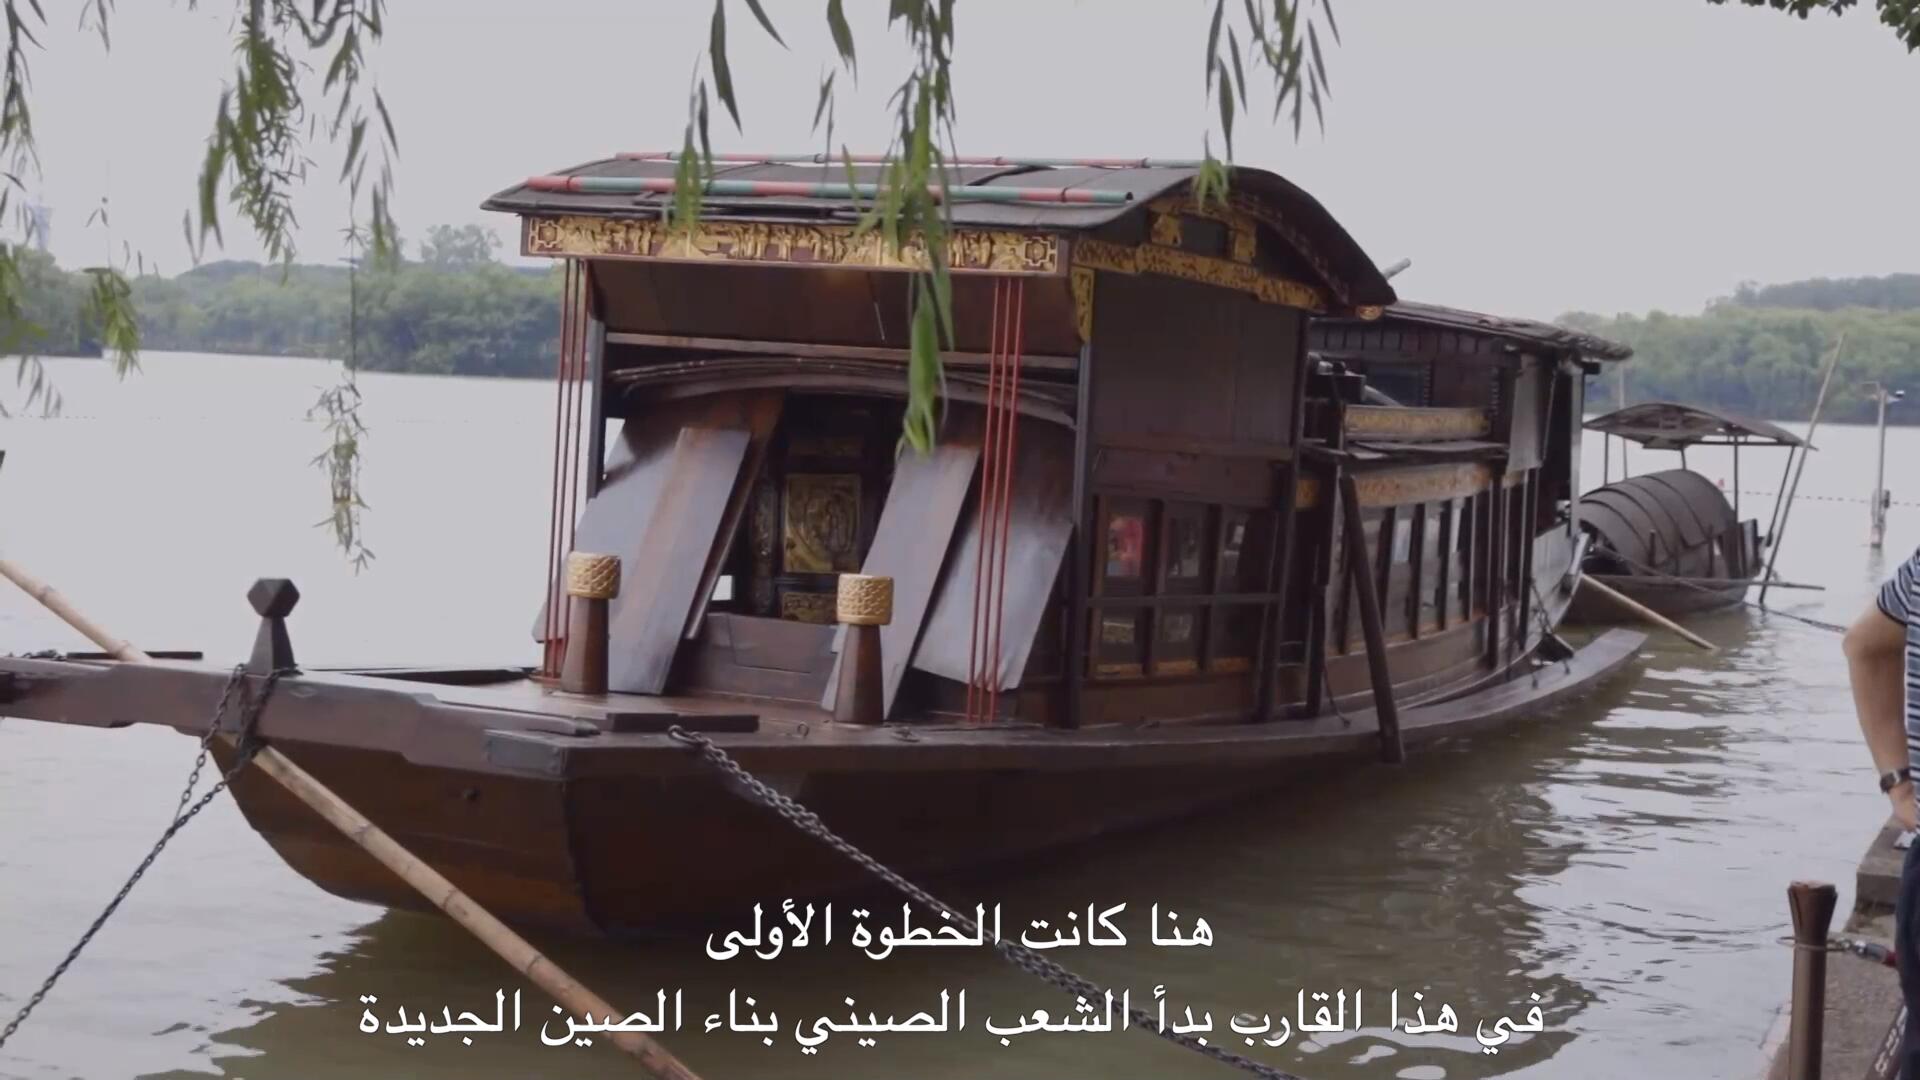 فيديو: القارب الأحمر في عيون العرب